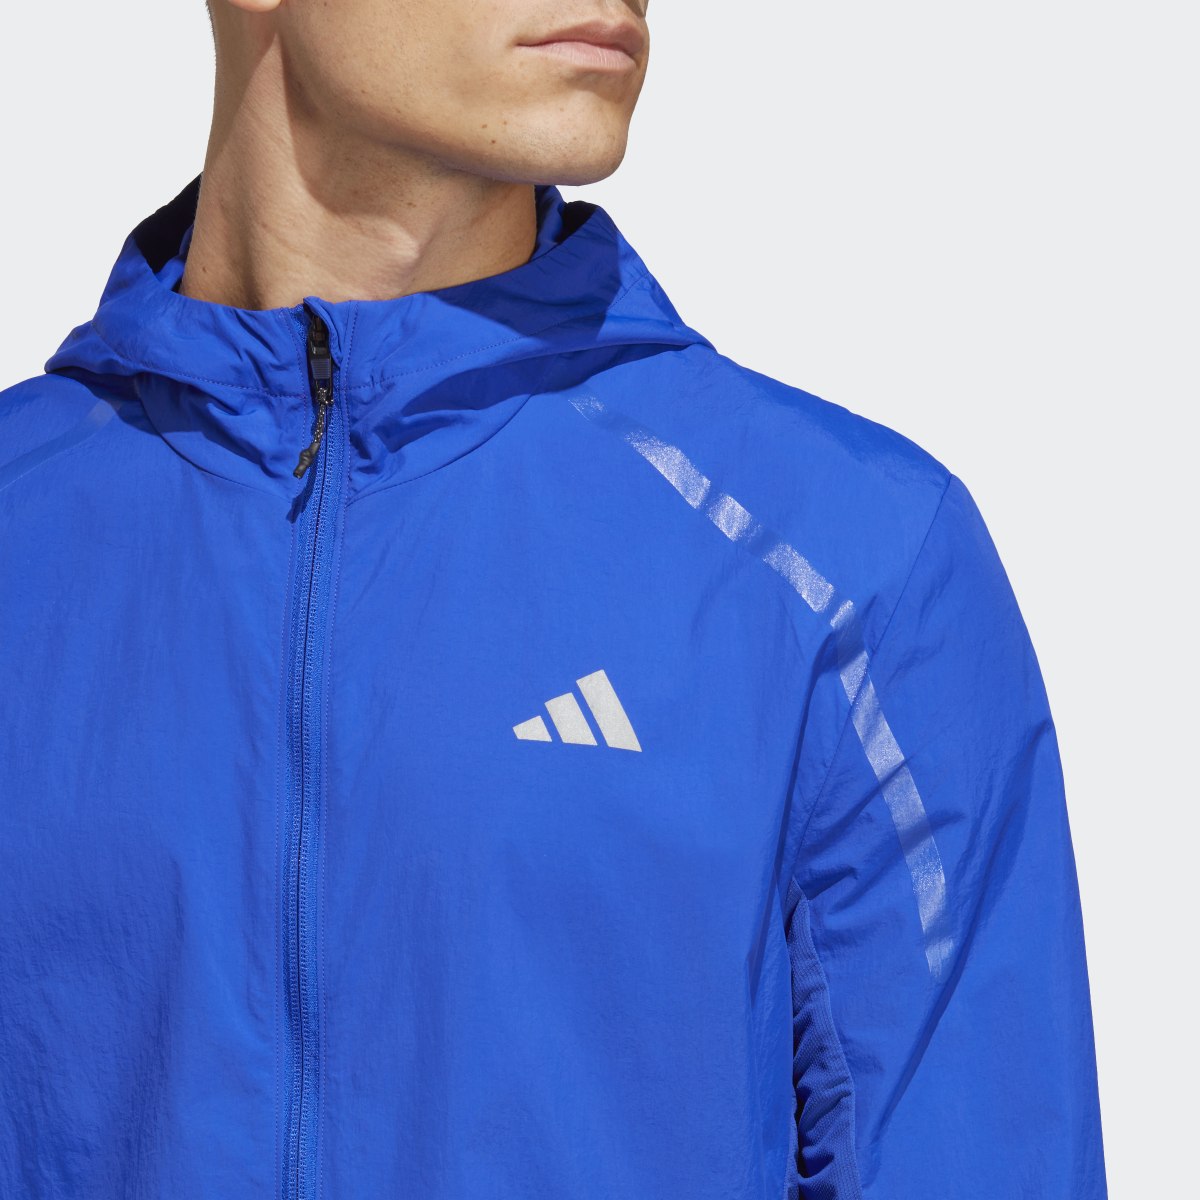 Adidas Marathon Warm-Up Jacket. 6